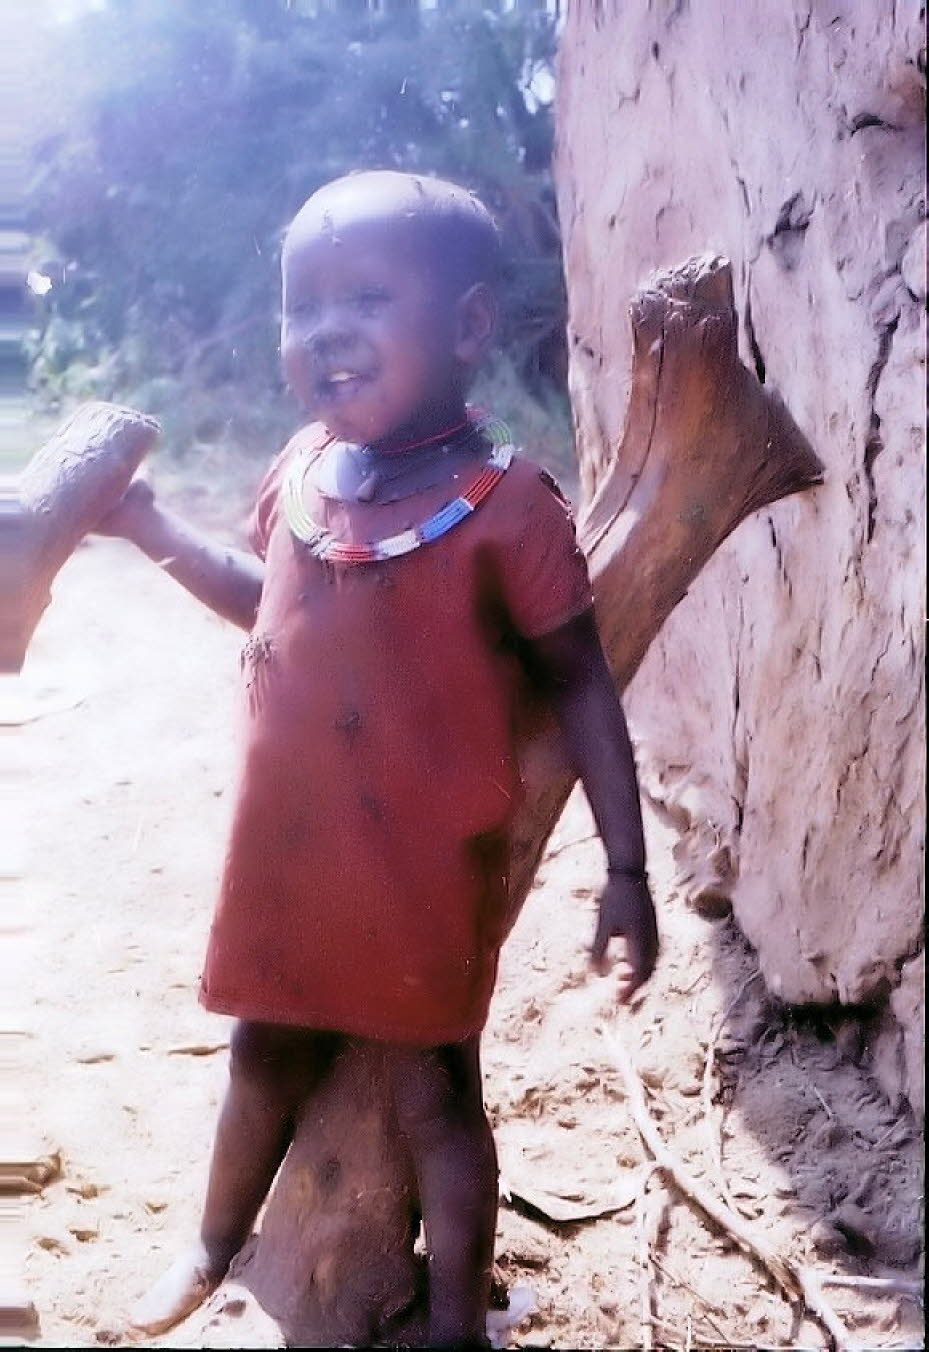 Ein Besuch in einem Massai-Dorf  in Kenia 1980